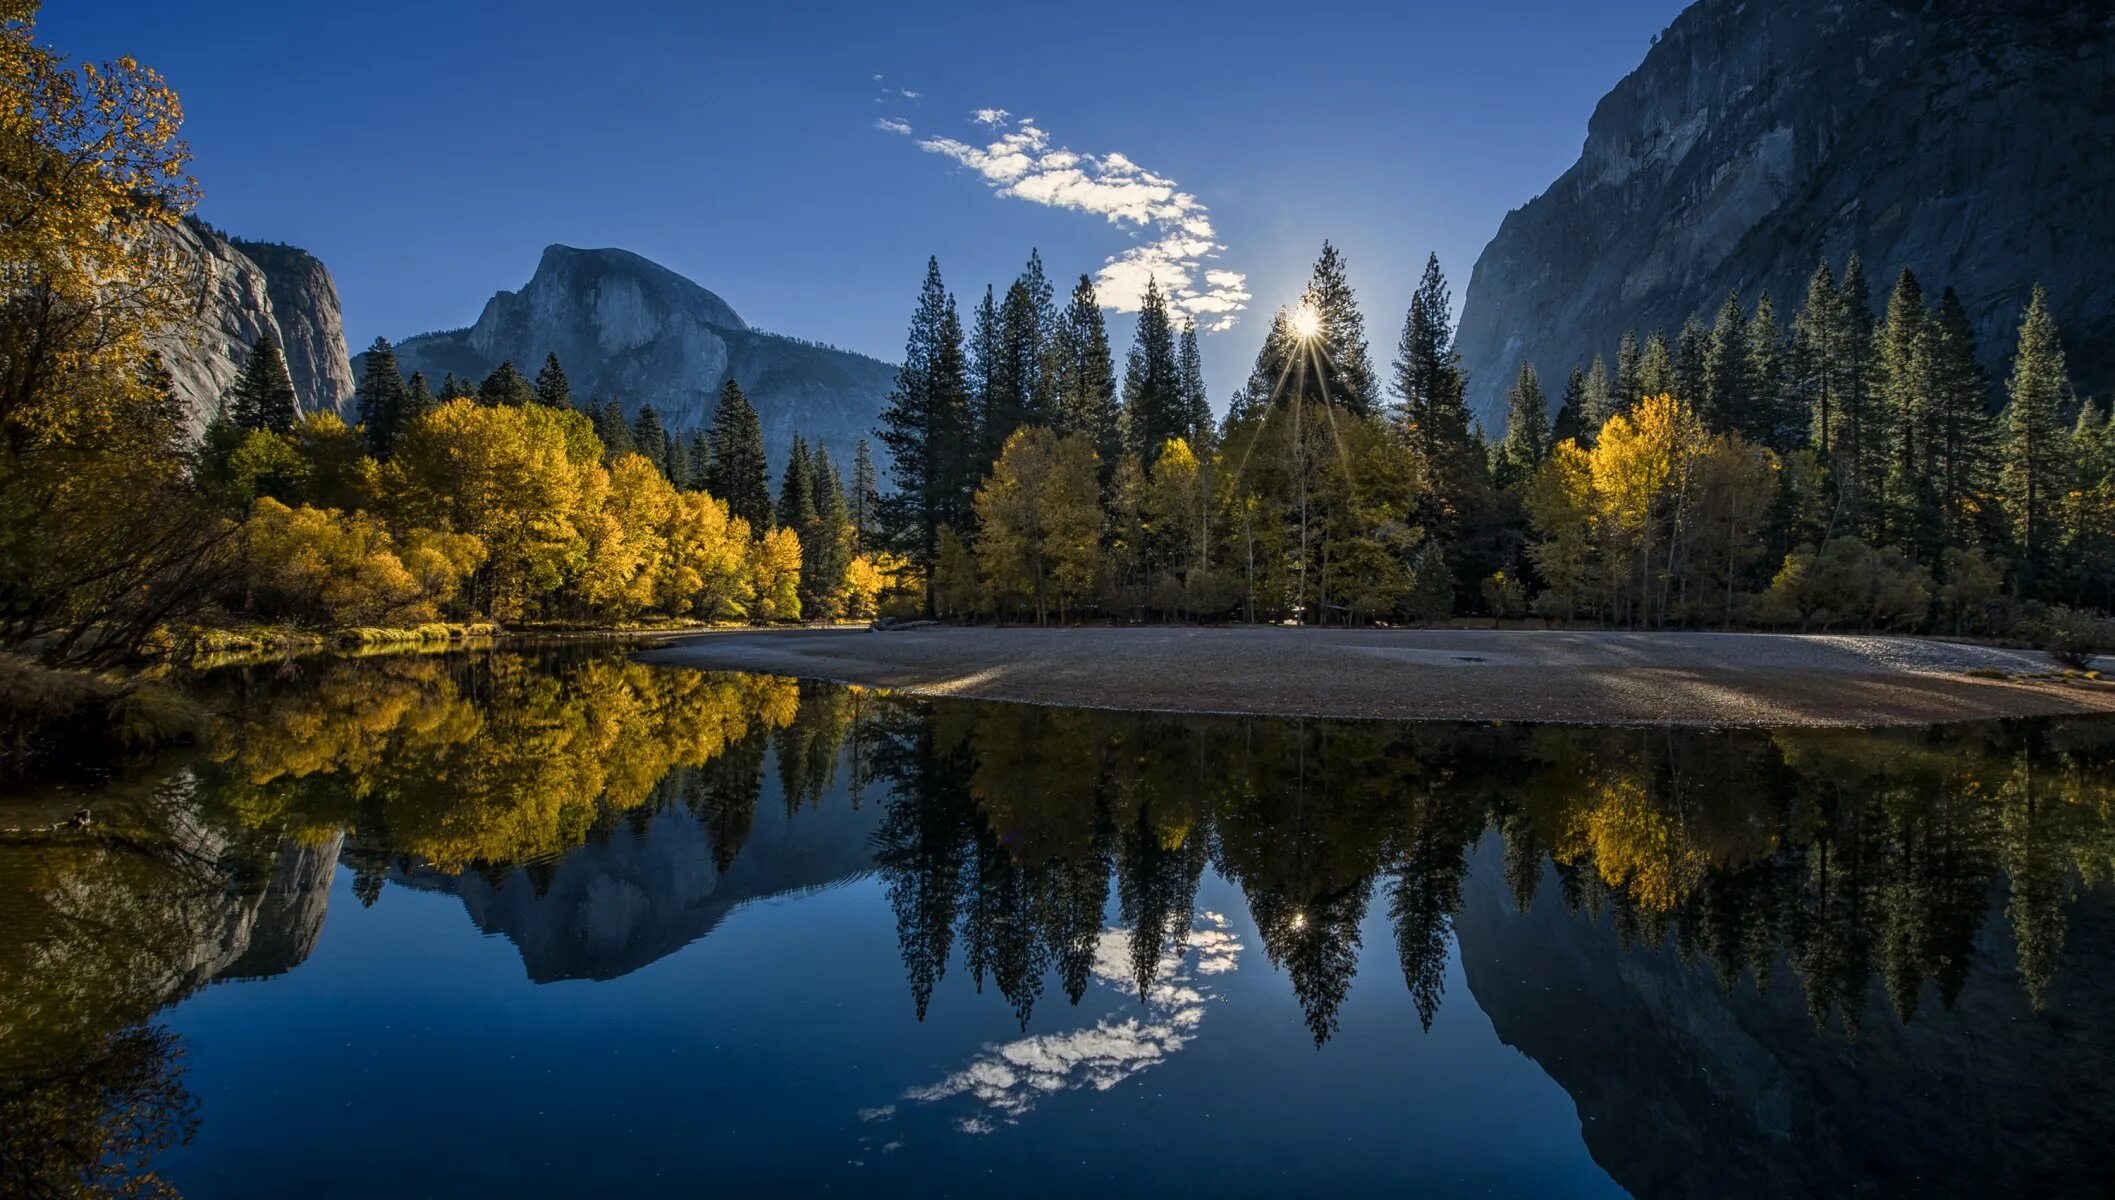 Картинка на обои высокого качества. Национальный парк Йосемити Калифорния США. Йосемити национальный парк осенью. Йосемити парк озеро. Красота природы.